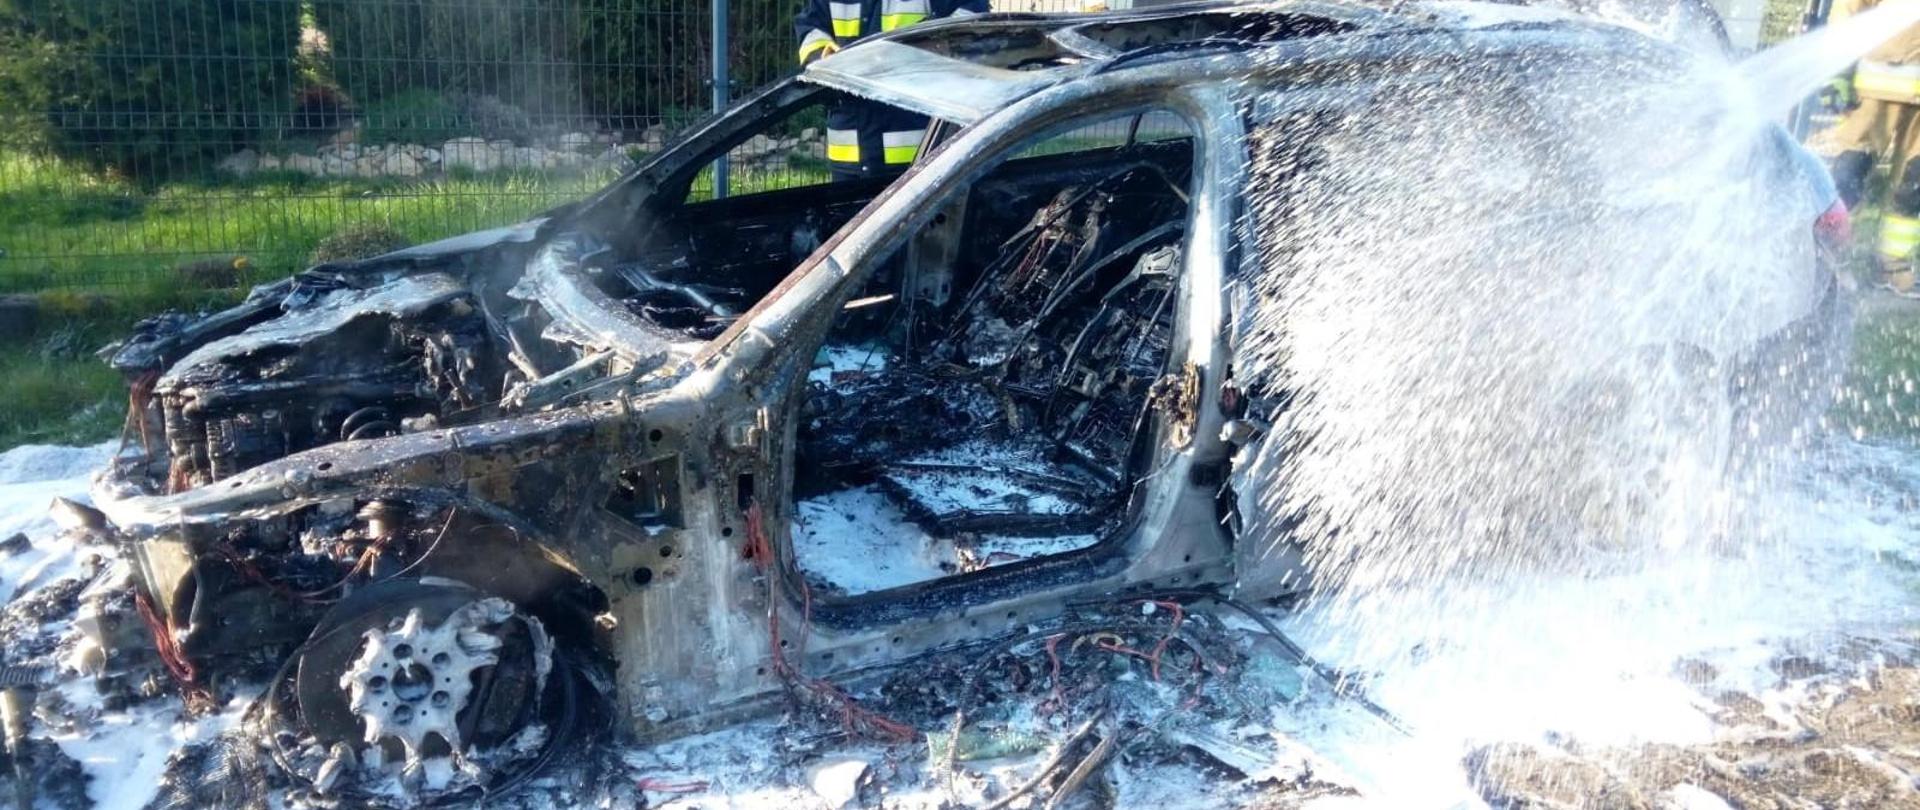 Zdjęcie przedstawia spalony samochód osobowy w trakcie dogaszania pożaru. Jest obficie pokryty pianą, która wciąż jest podawana z prawej strony.